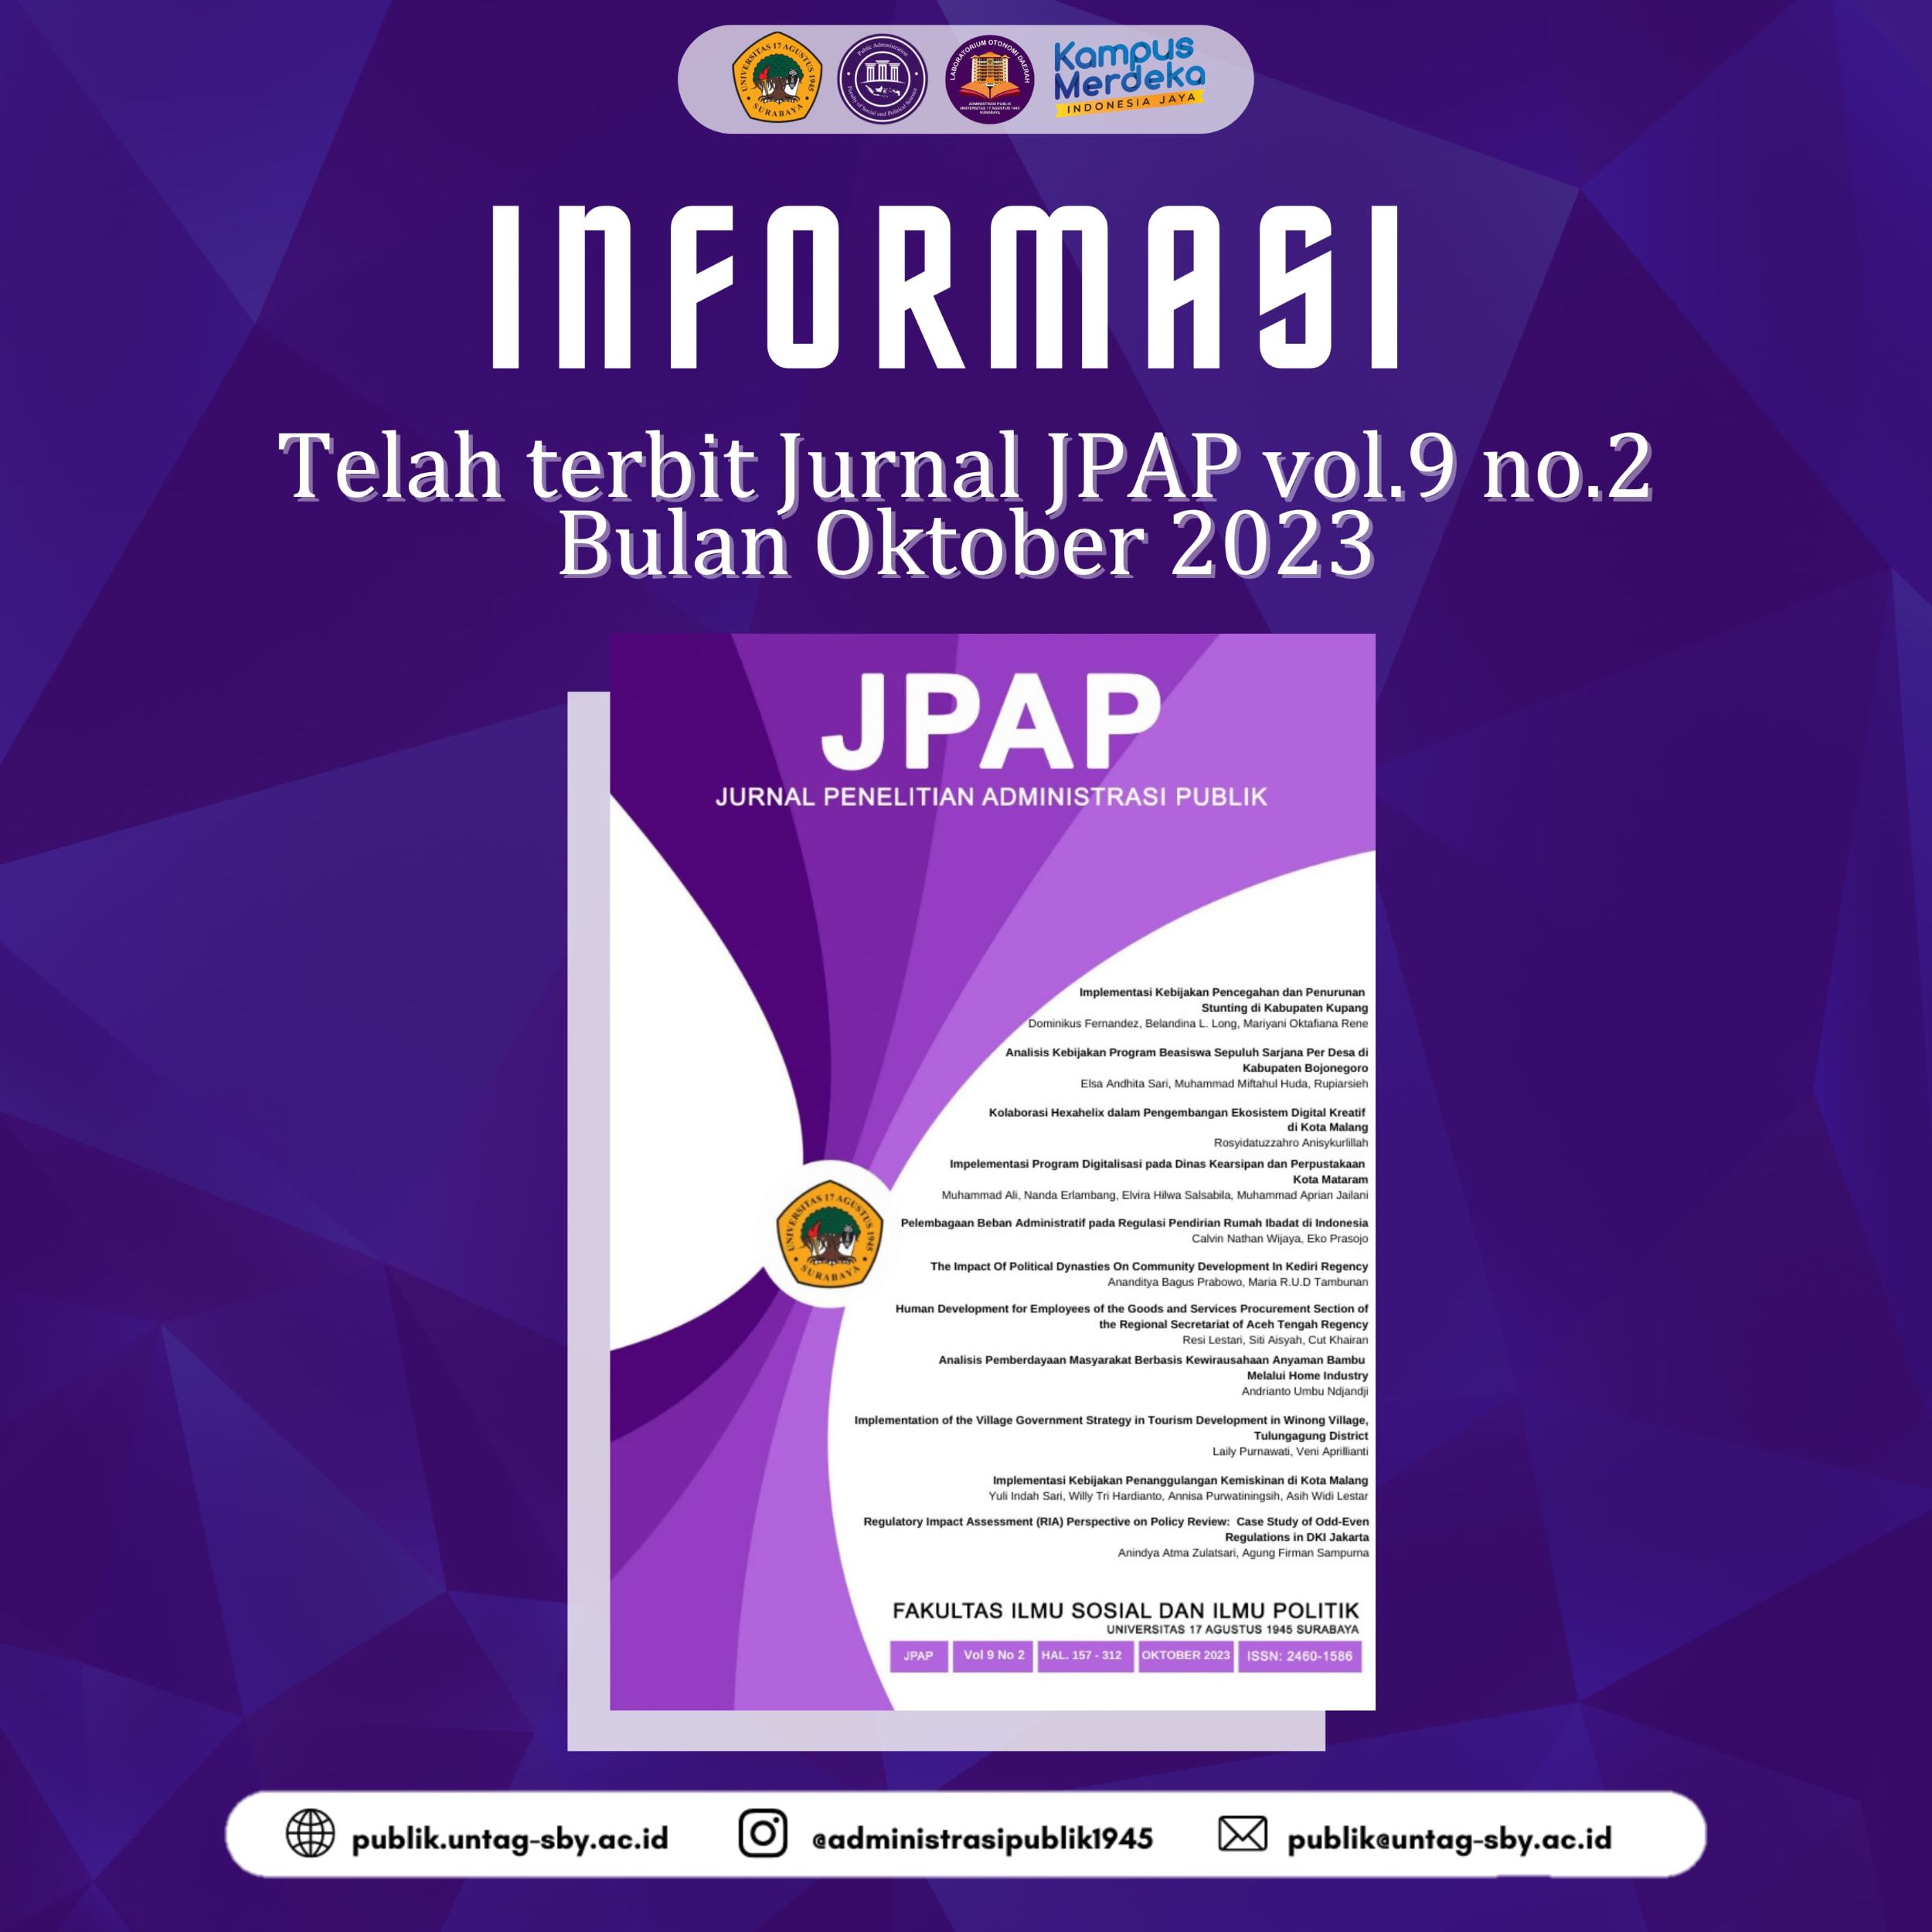 Terbitnya Jurnal JPAP Vol 9 Nomor 2